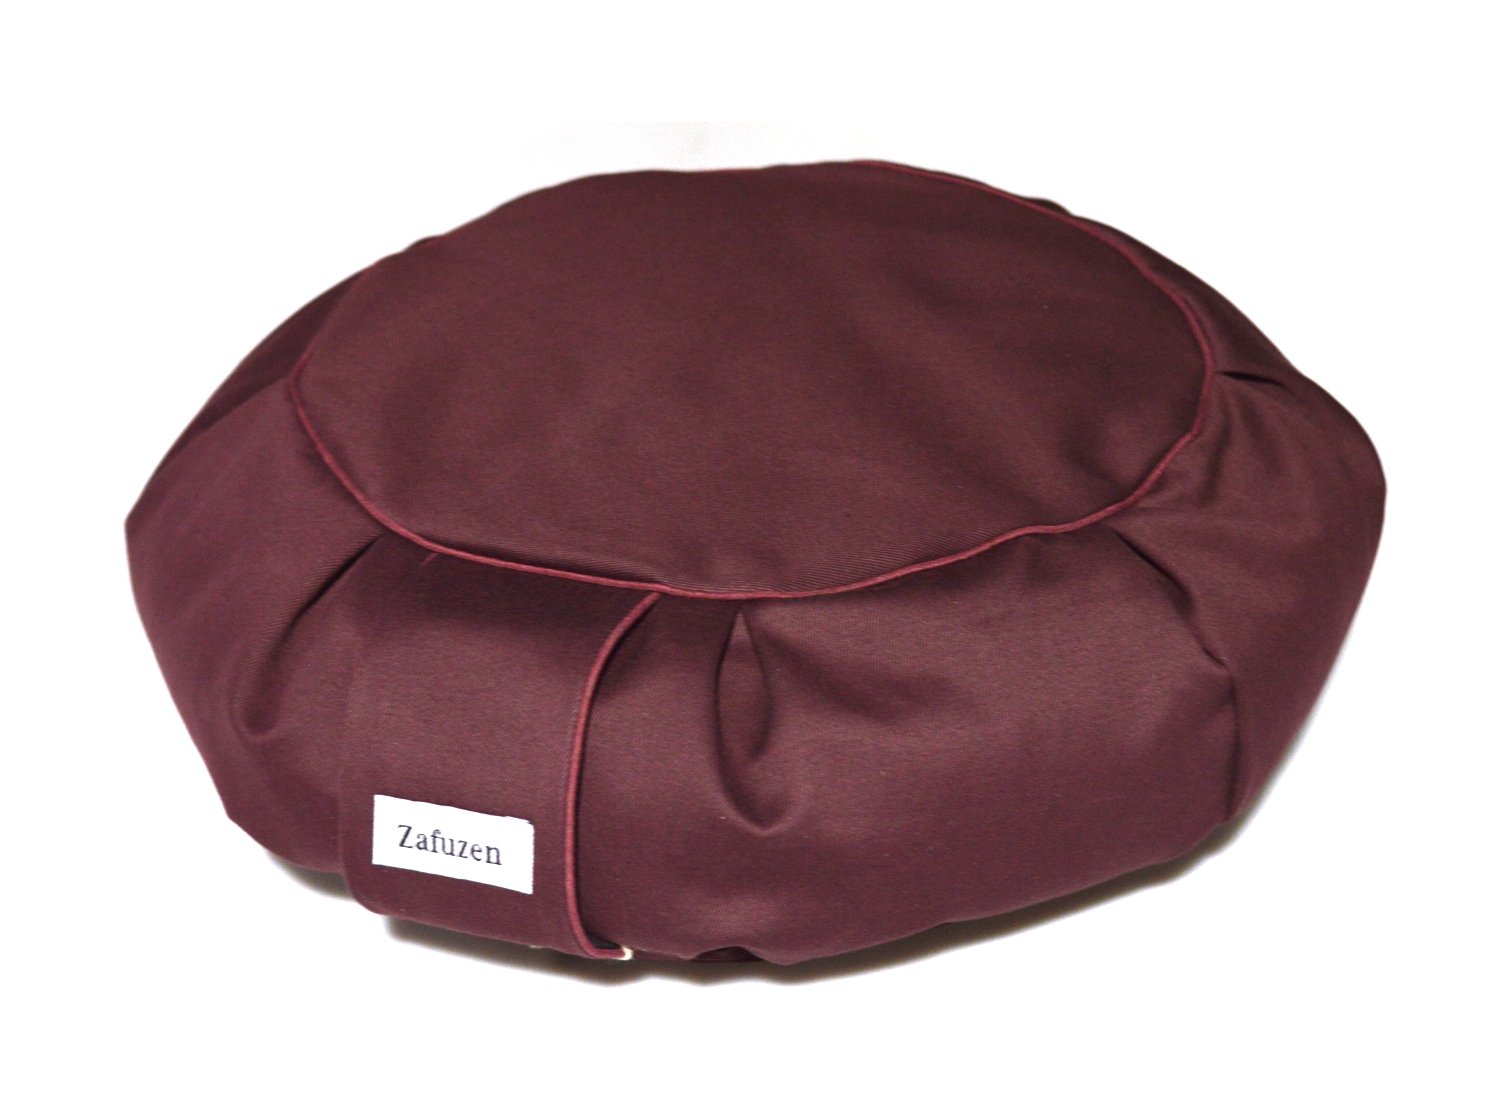 Подушка для медитации Дзафу бордовая Zafuzen. 